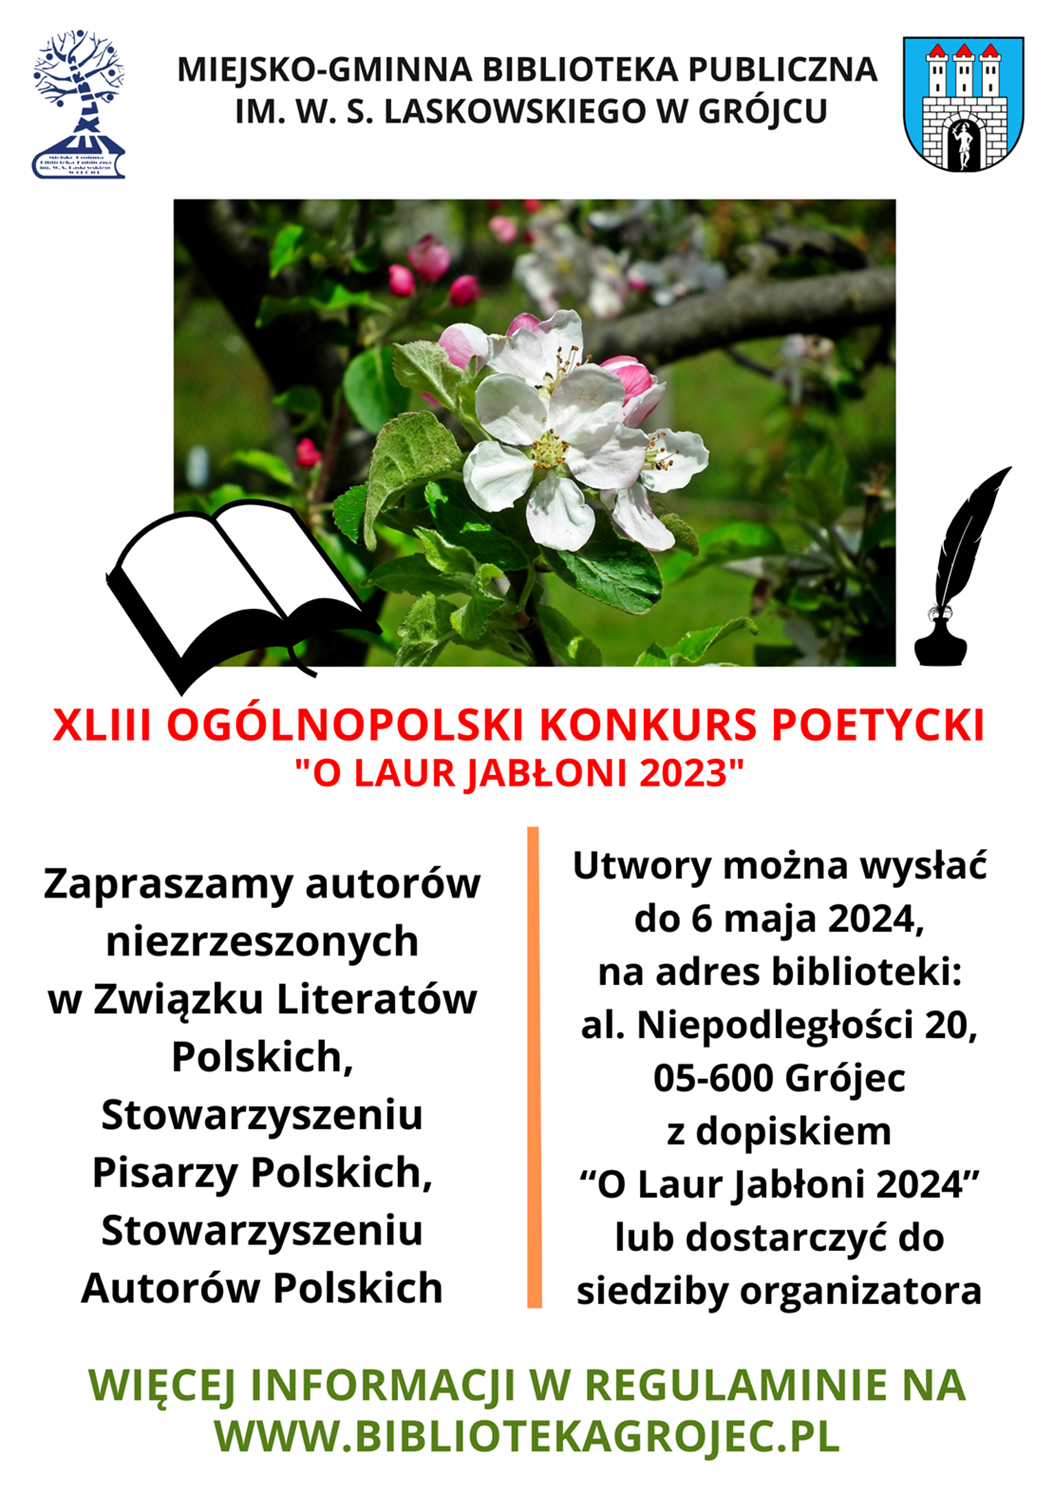 Plakat promujący konkurs poetycki organizowany przez Miejsko-Gminną Bibliotekę Publiczną im. Wacława Skarbimira Laskowskiego w Grójcu. Plakat jest odnośnikiem do wpisu 